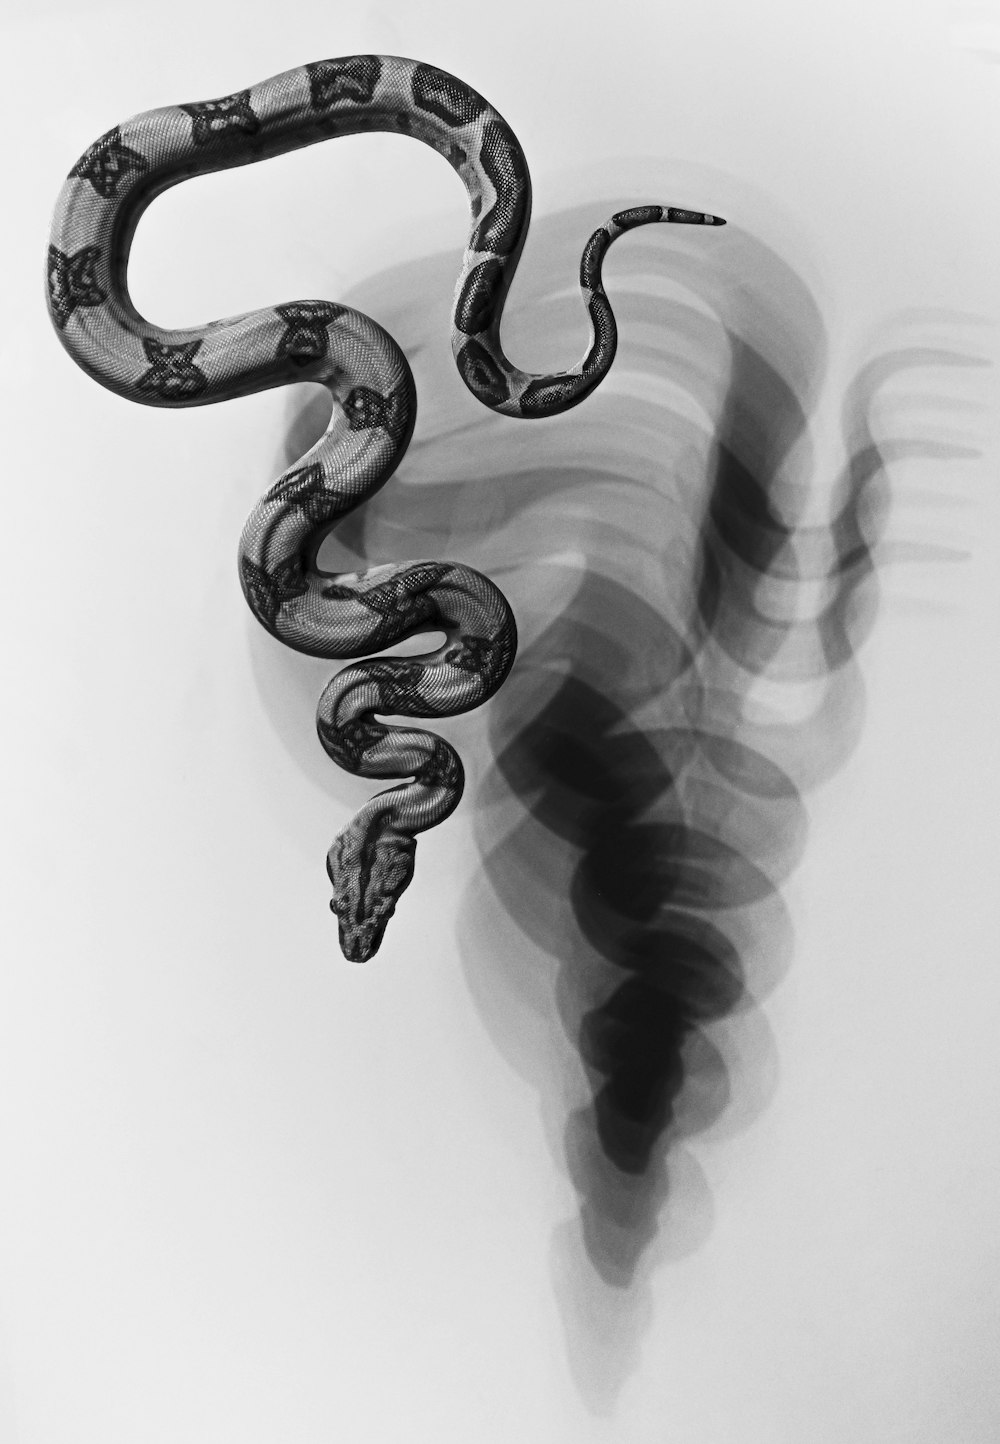 뱀의 흑백 사진